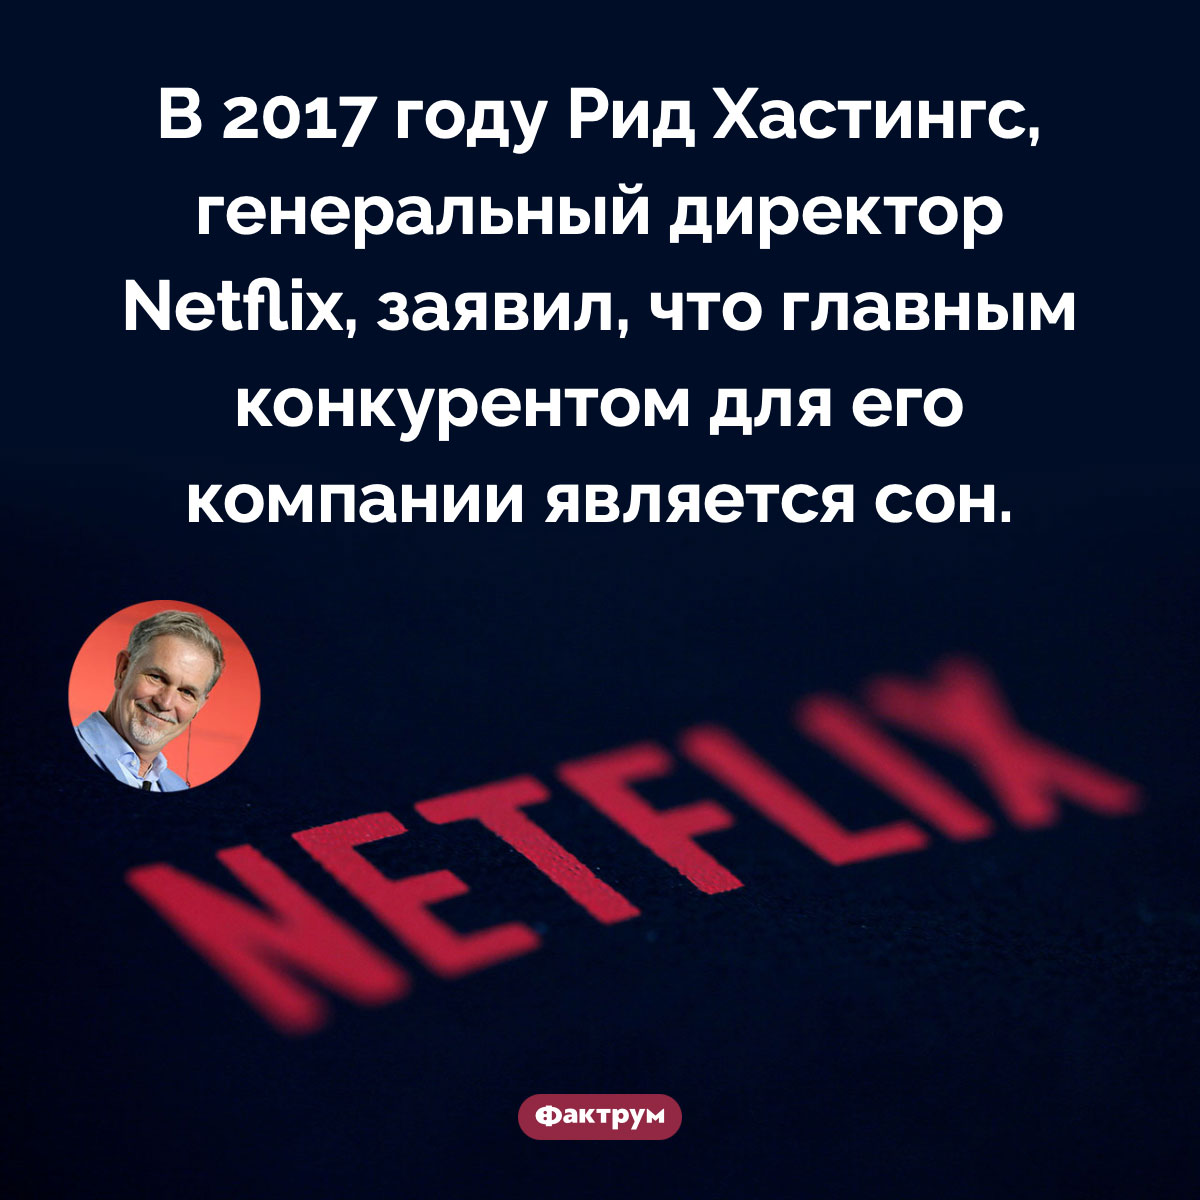 Главный конкурент Netflix. В 2017 году Рид Хастингс, генеральный директор Netflix, заявил, что главным конкурентом для его компании является сон.